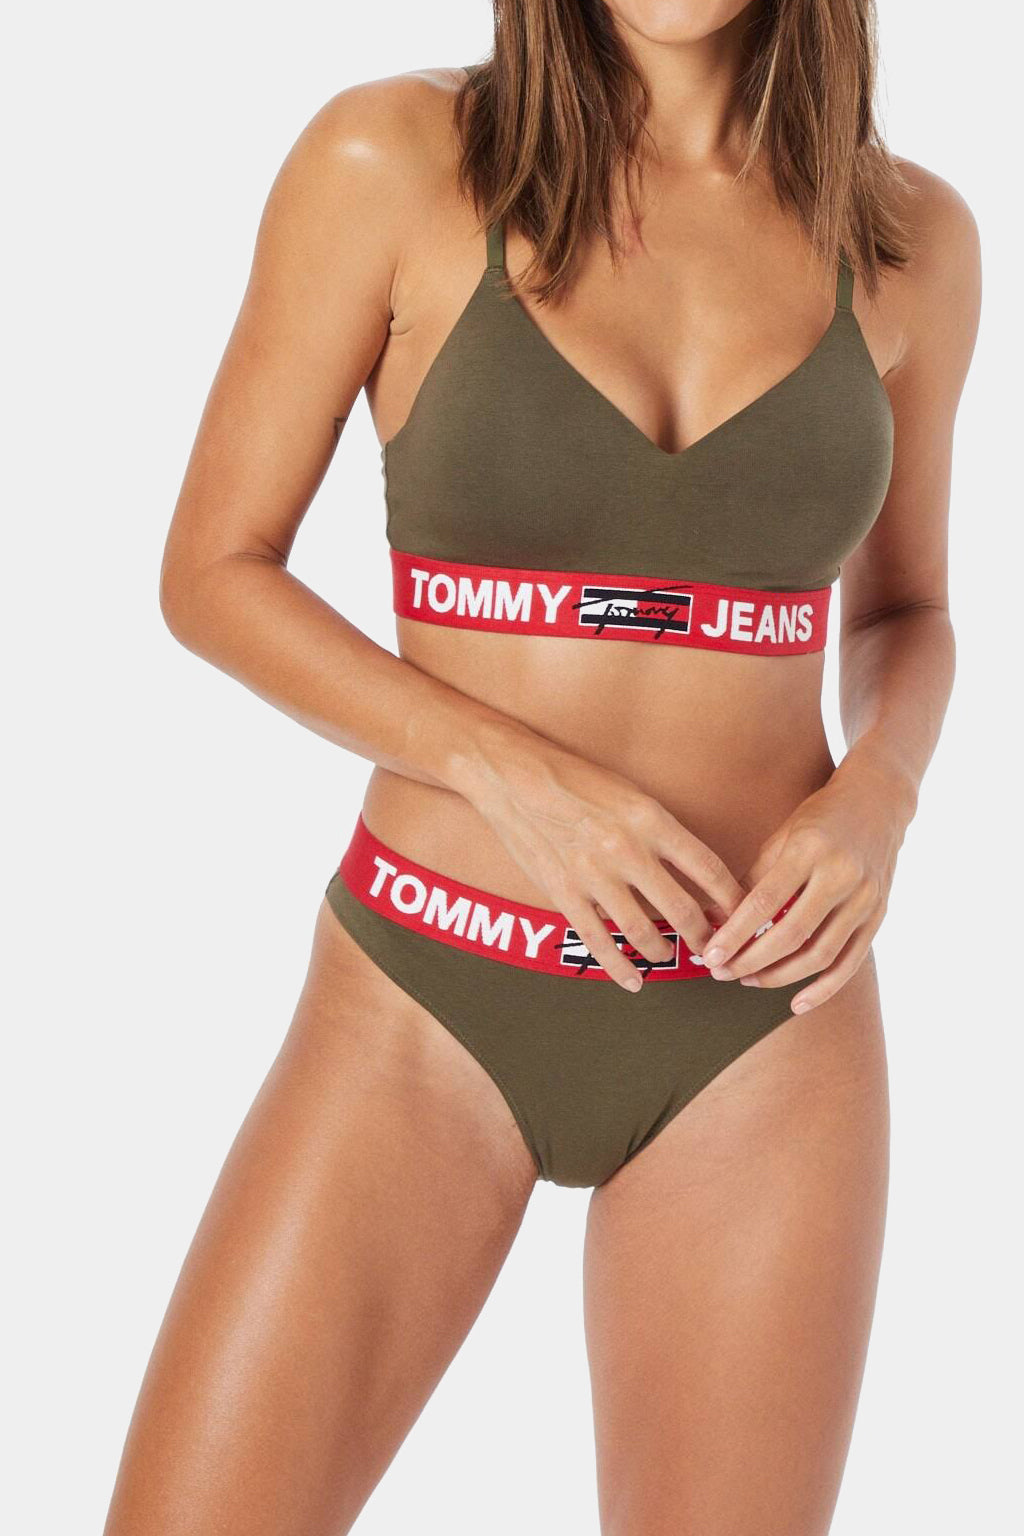 Tommy Jeans - Panty